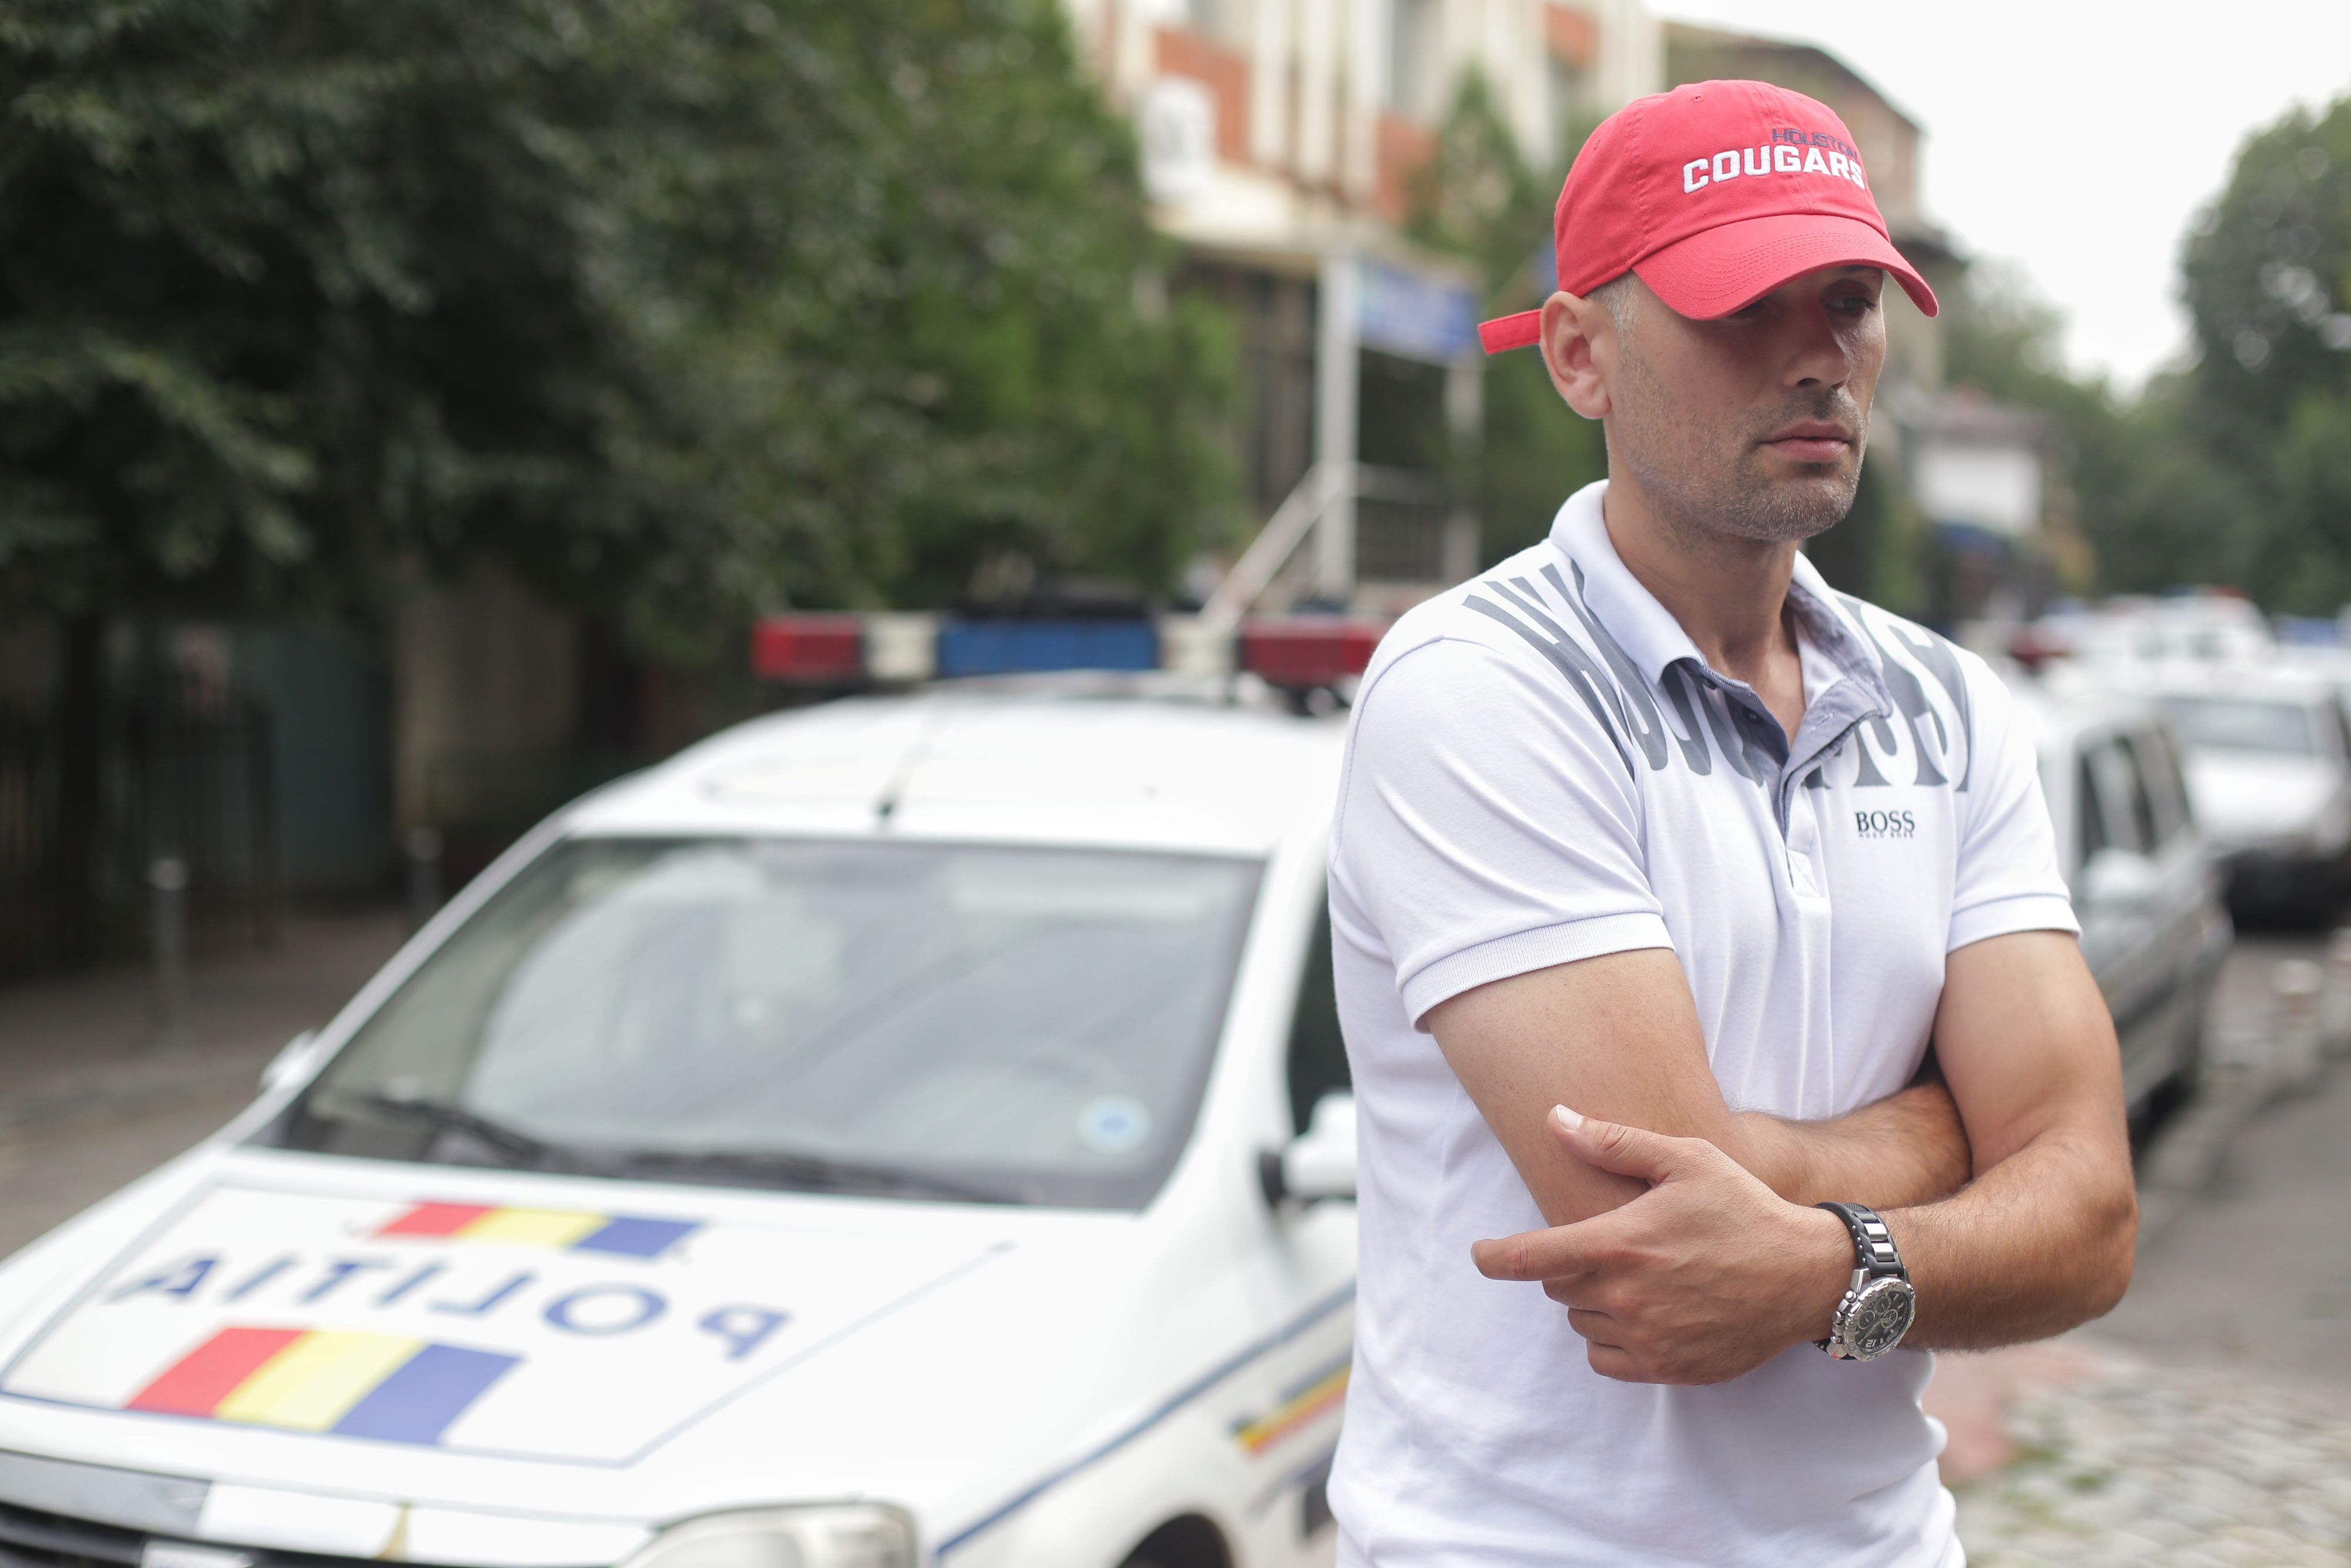 Şoferul maşinii cu numere anti-PSD face plângere penală: ”N-am omorât pe nimeni”